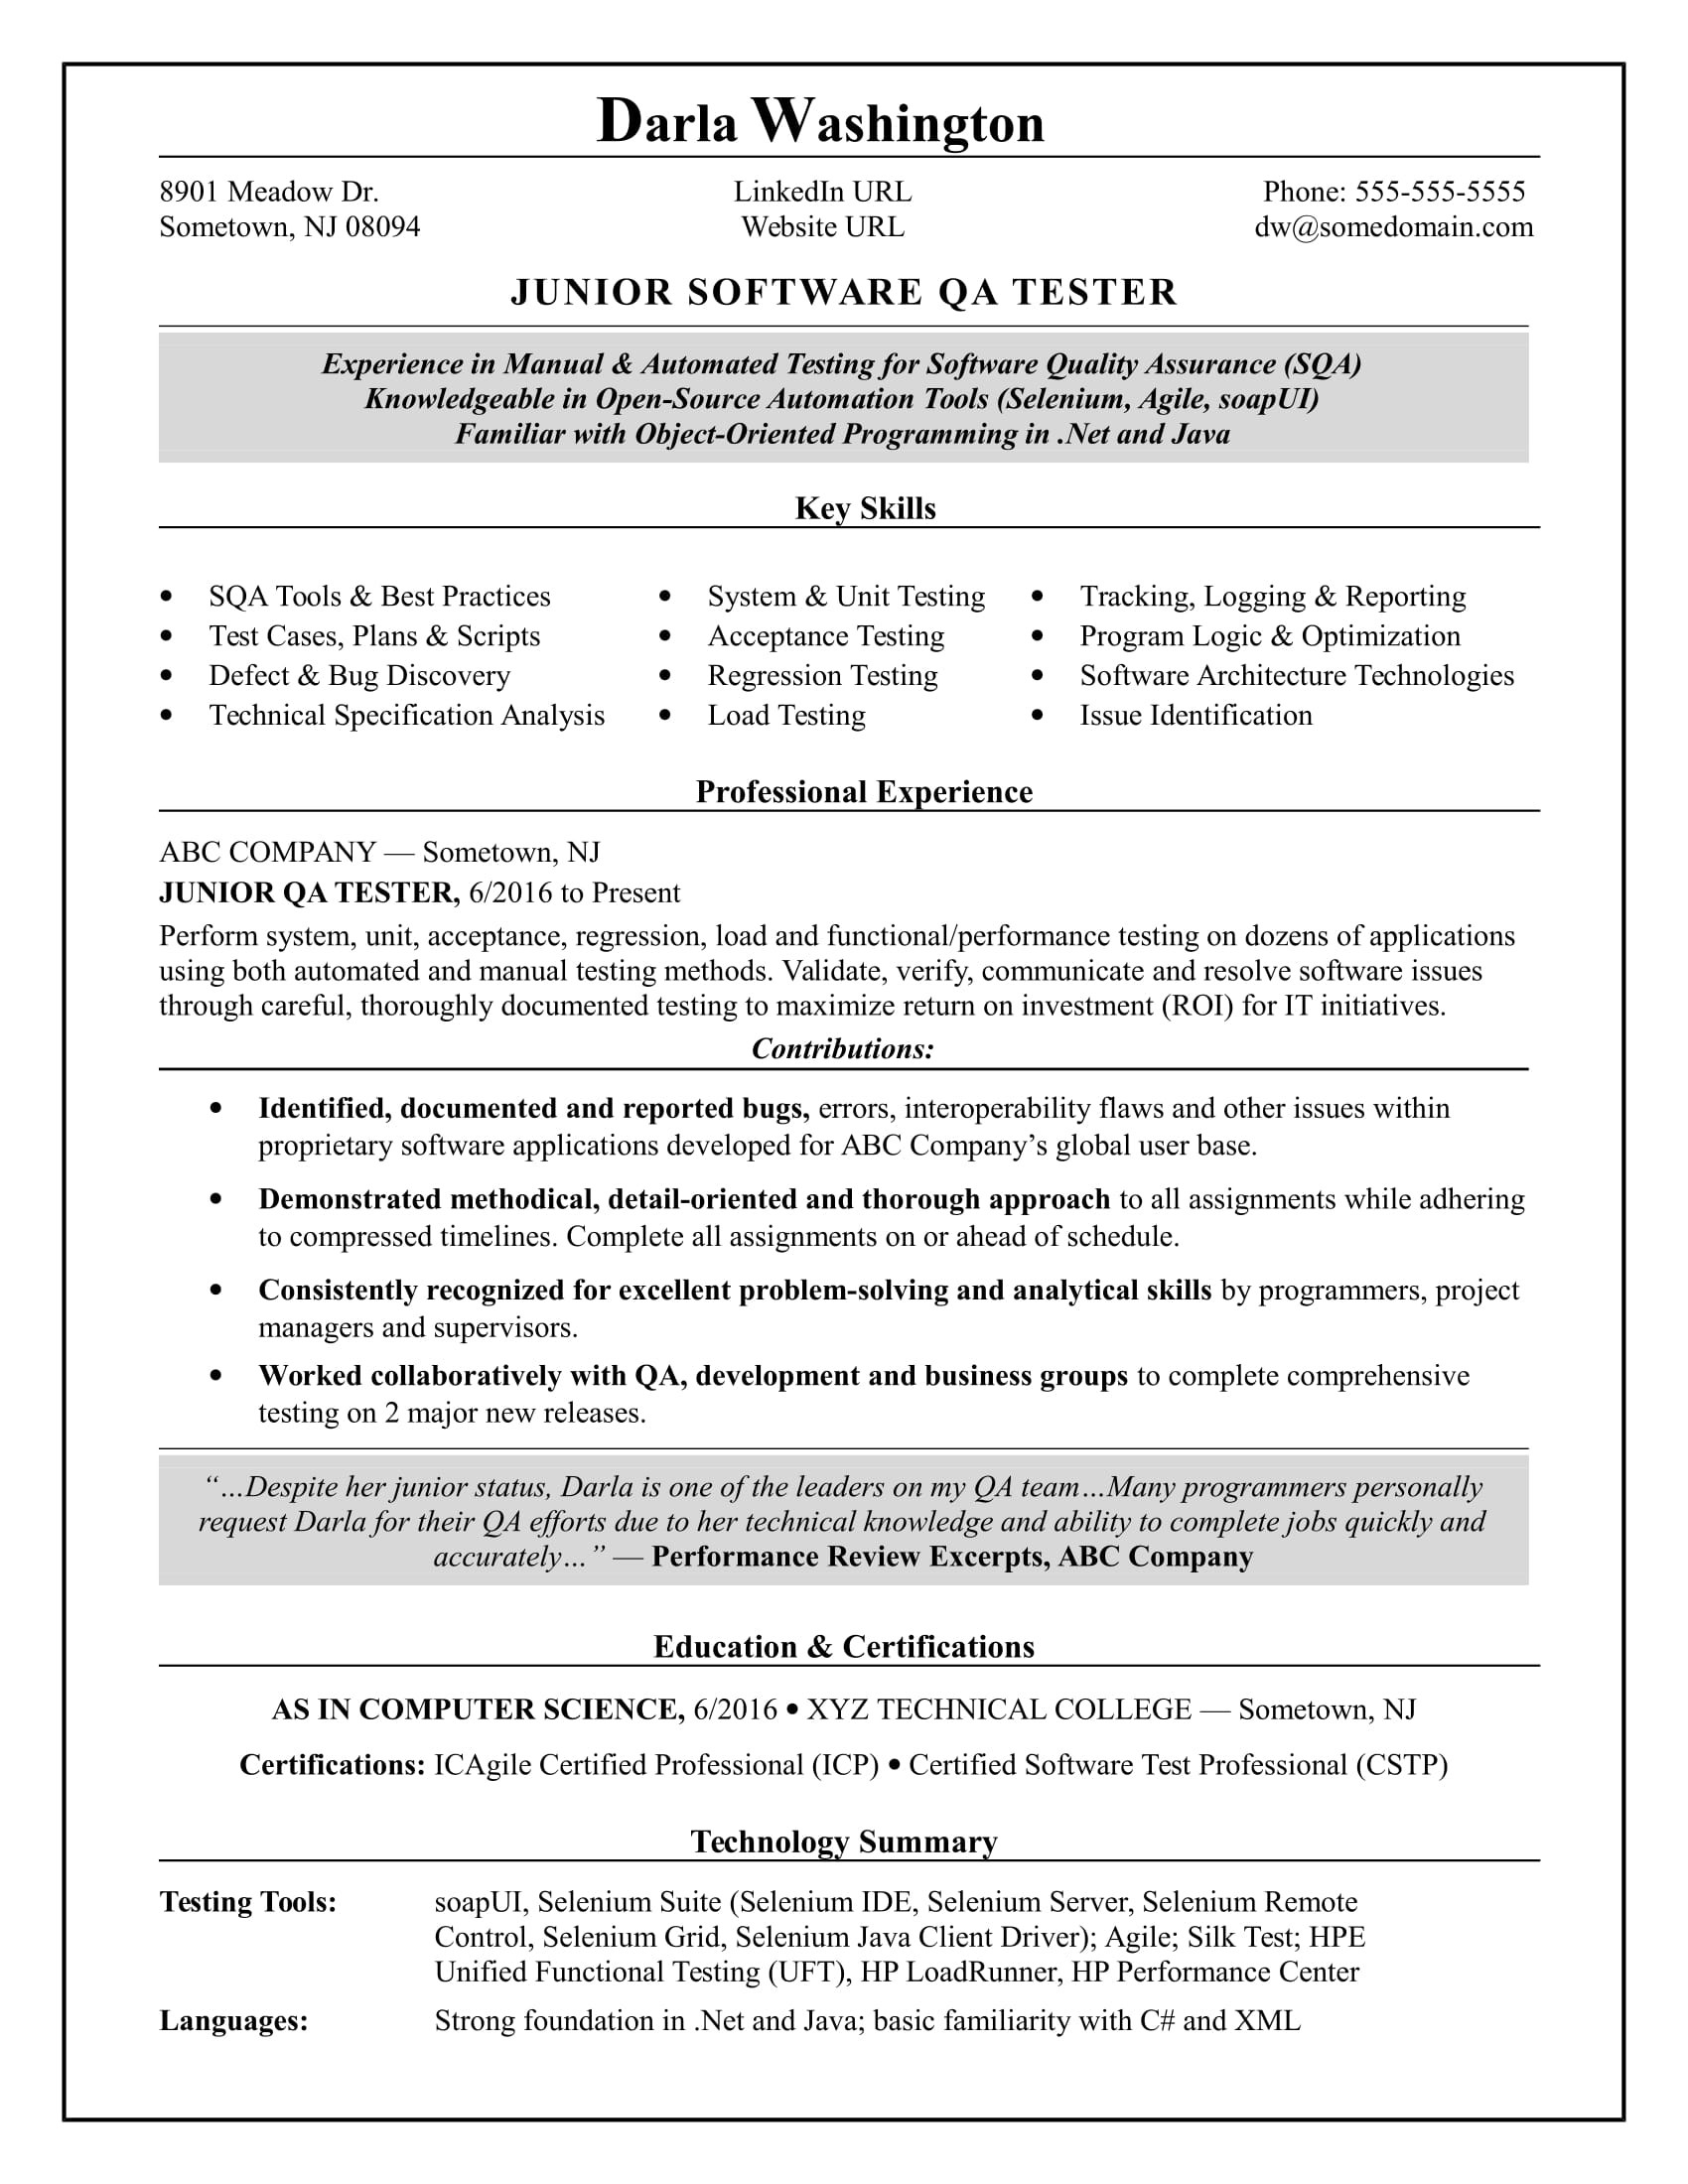 Resume Samples It Recruiter Entry Level Entry-level software Tester Resume Monster.com